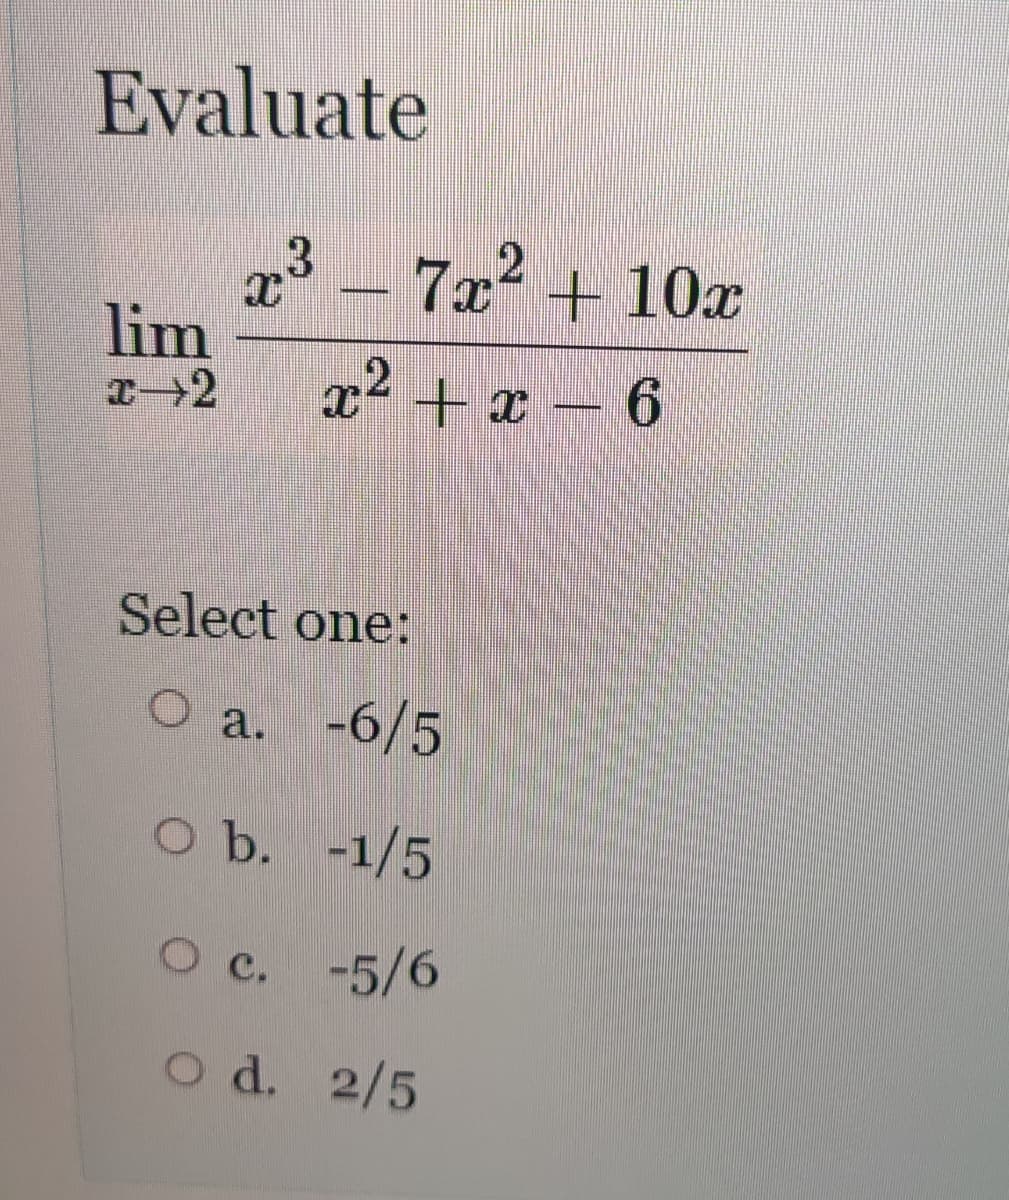 Evaluate
7x + 10x
lim
x² + r - 6
Select one:
a. -6/5
O b. -1/5
O c. -5/6
O d. 2/5
